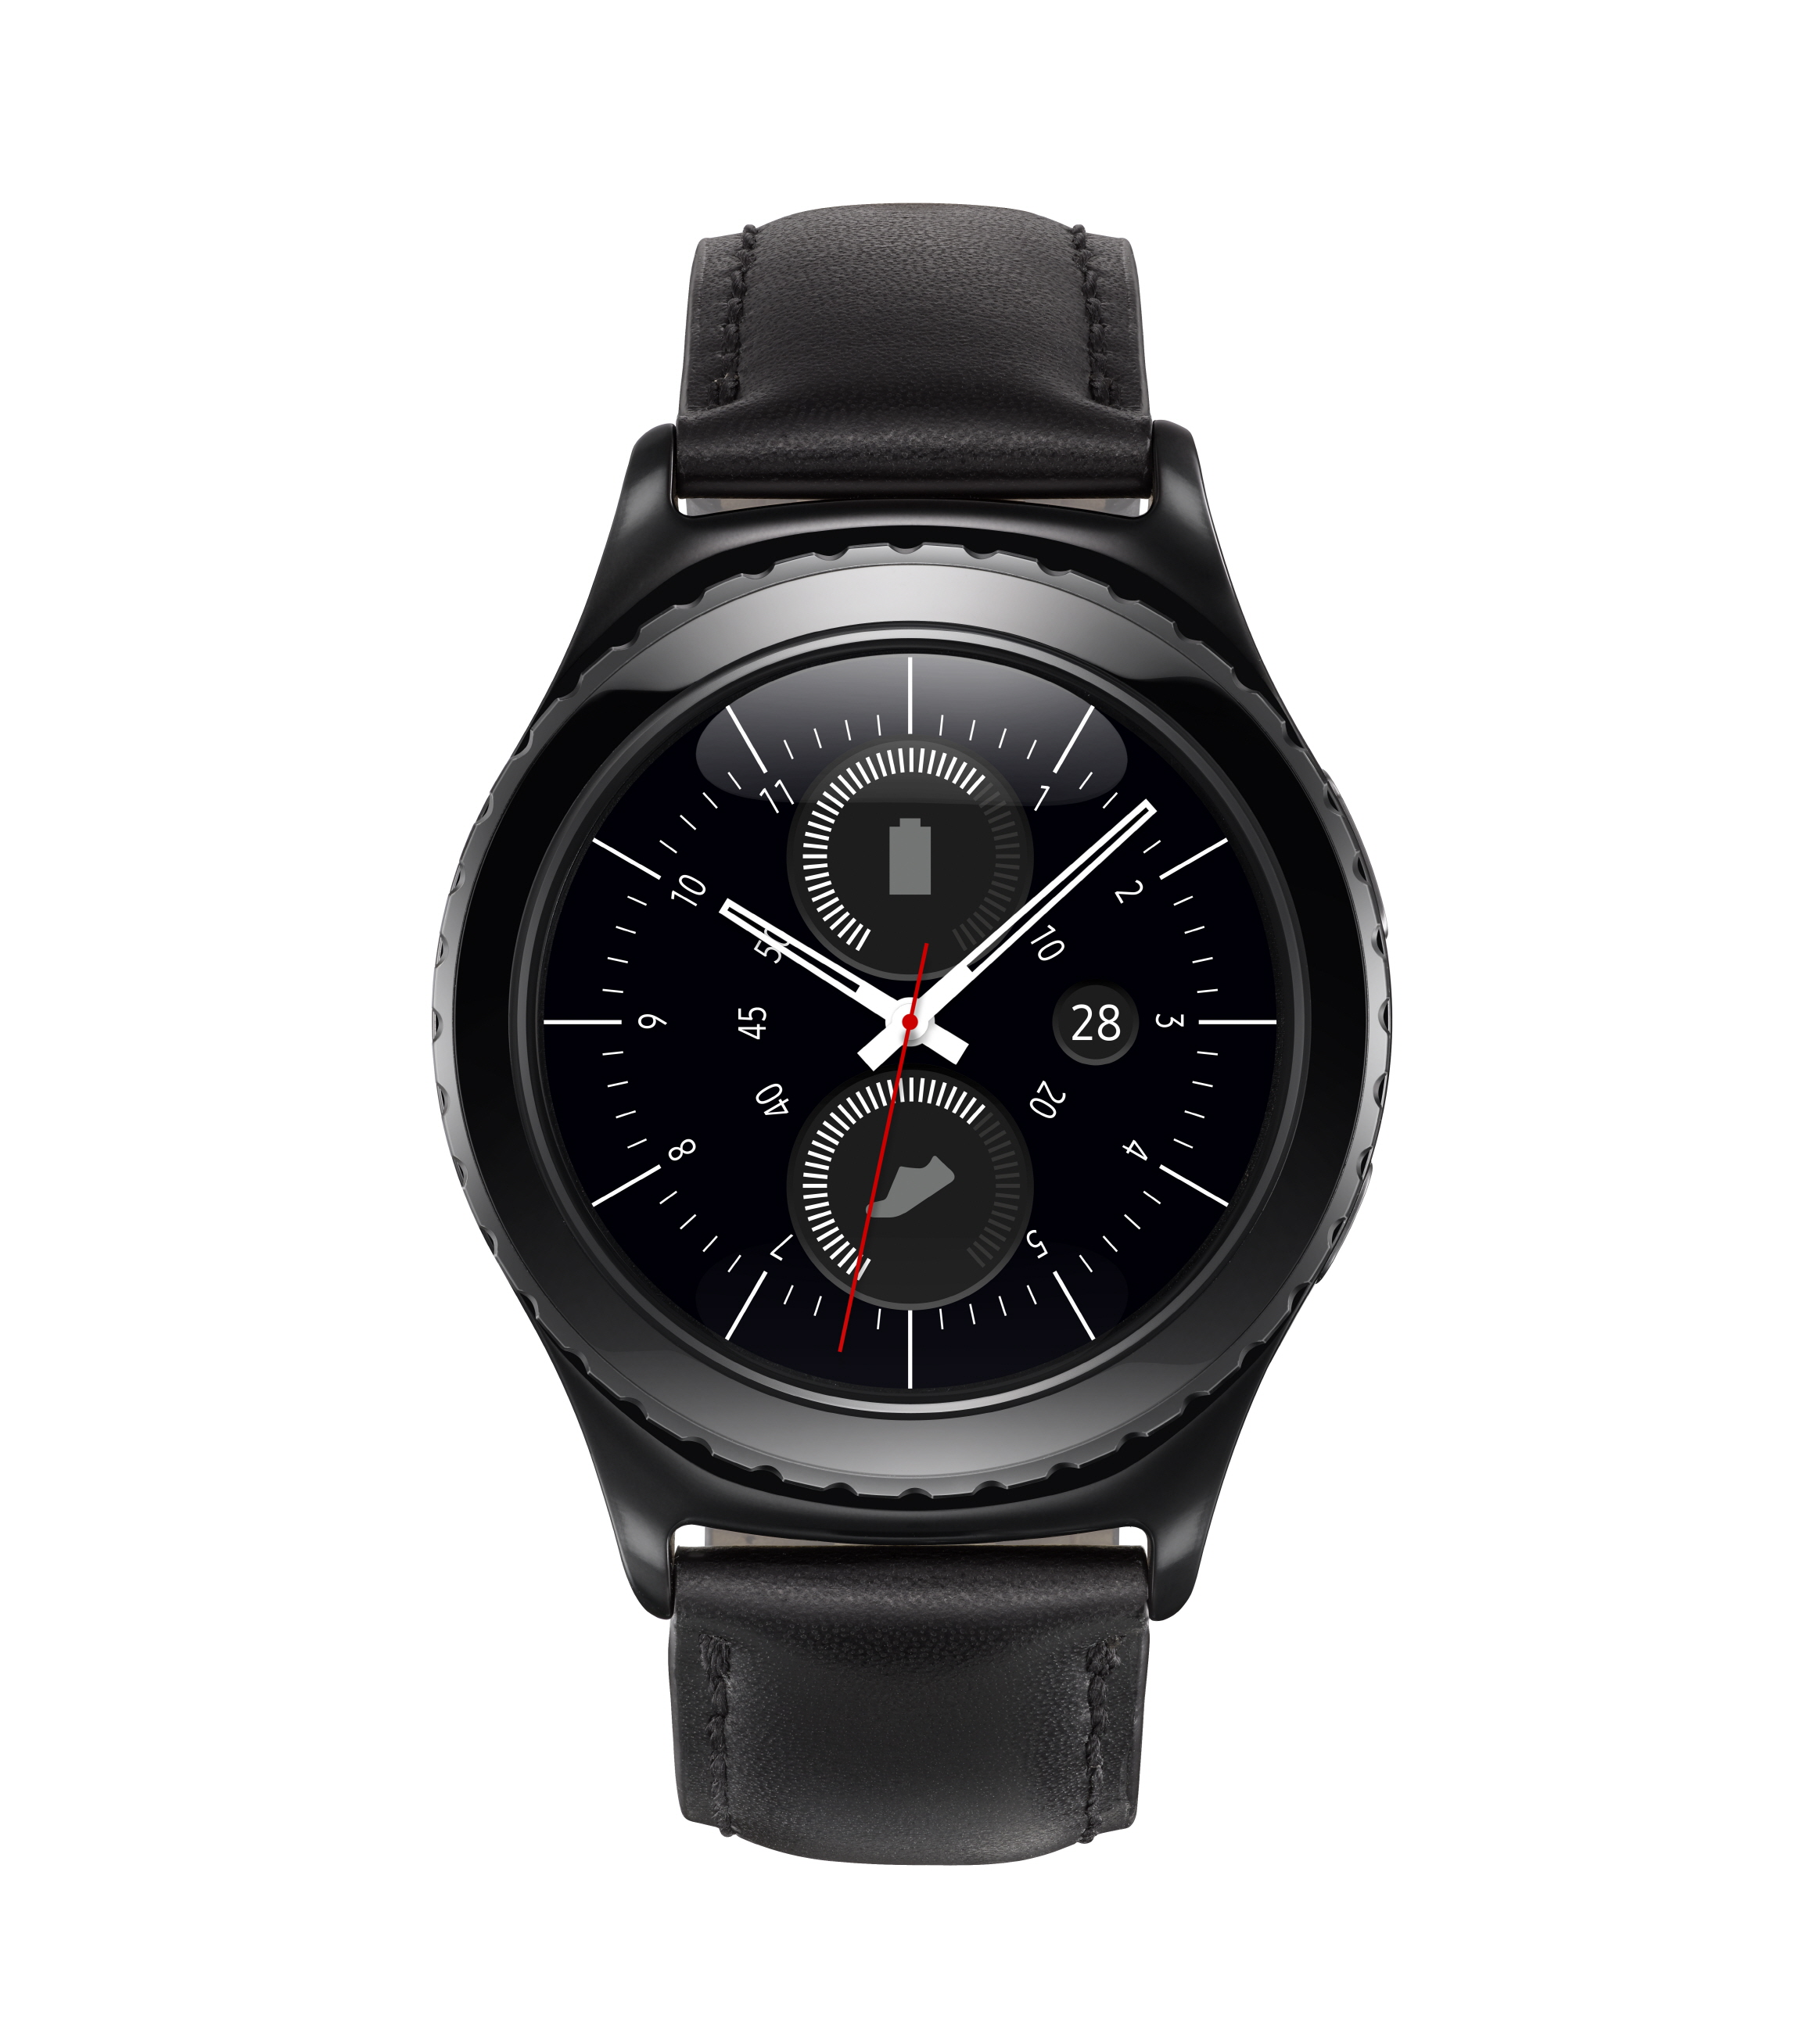 Samsung Gear S2 ? nowy smartwatch z obrotowym pierścieniem